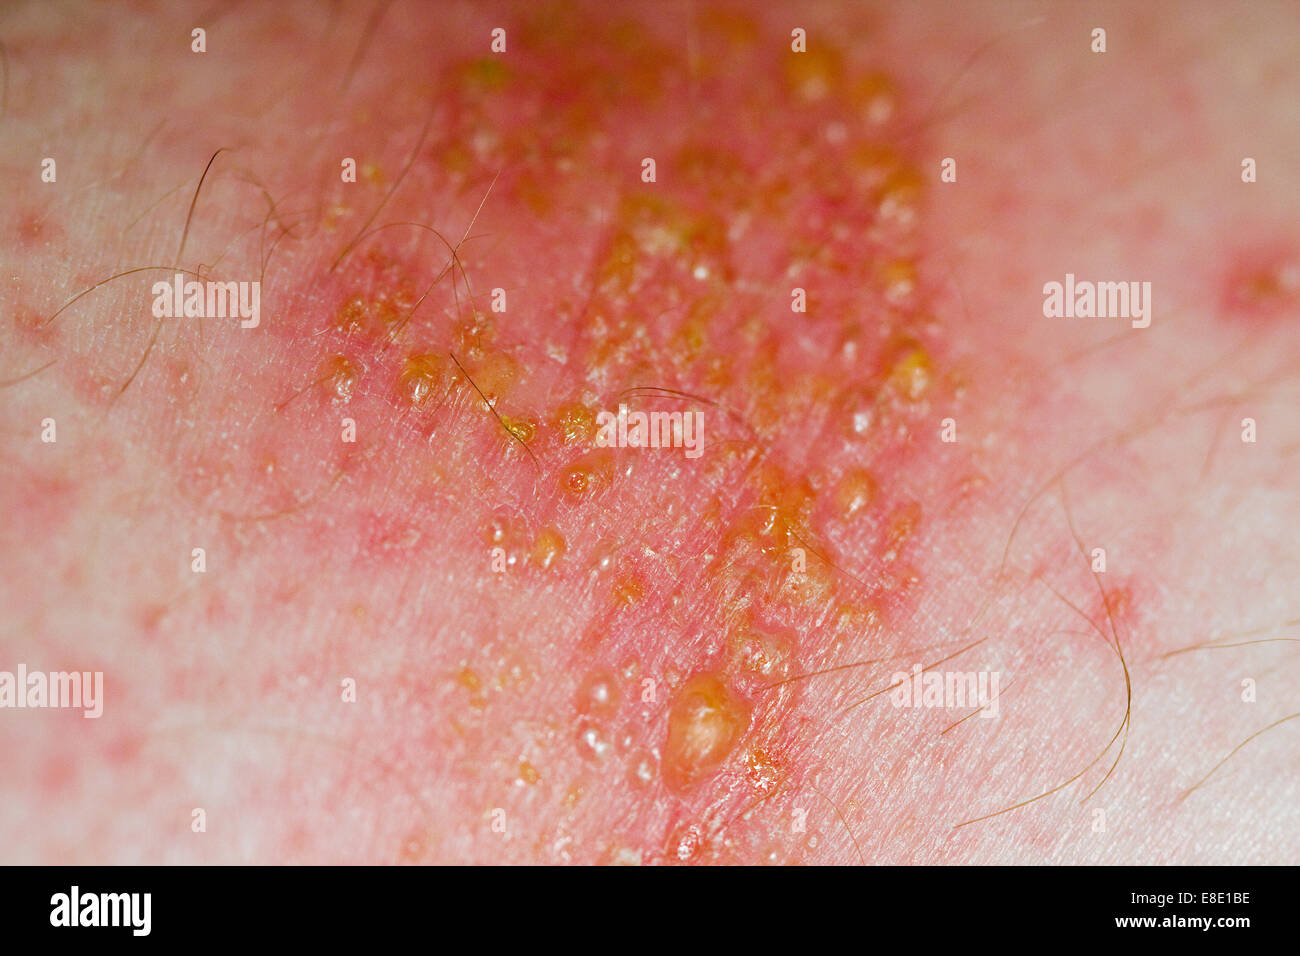 Non-Bullous impétigo infección en la superficie de la piel causadas por Staphylococcus aureus o streptococcus pyogenes bacterias Foto de stock